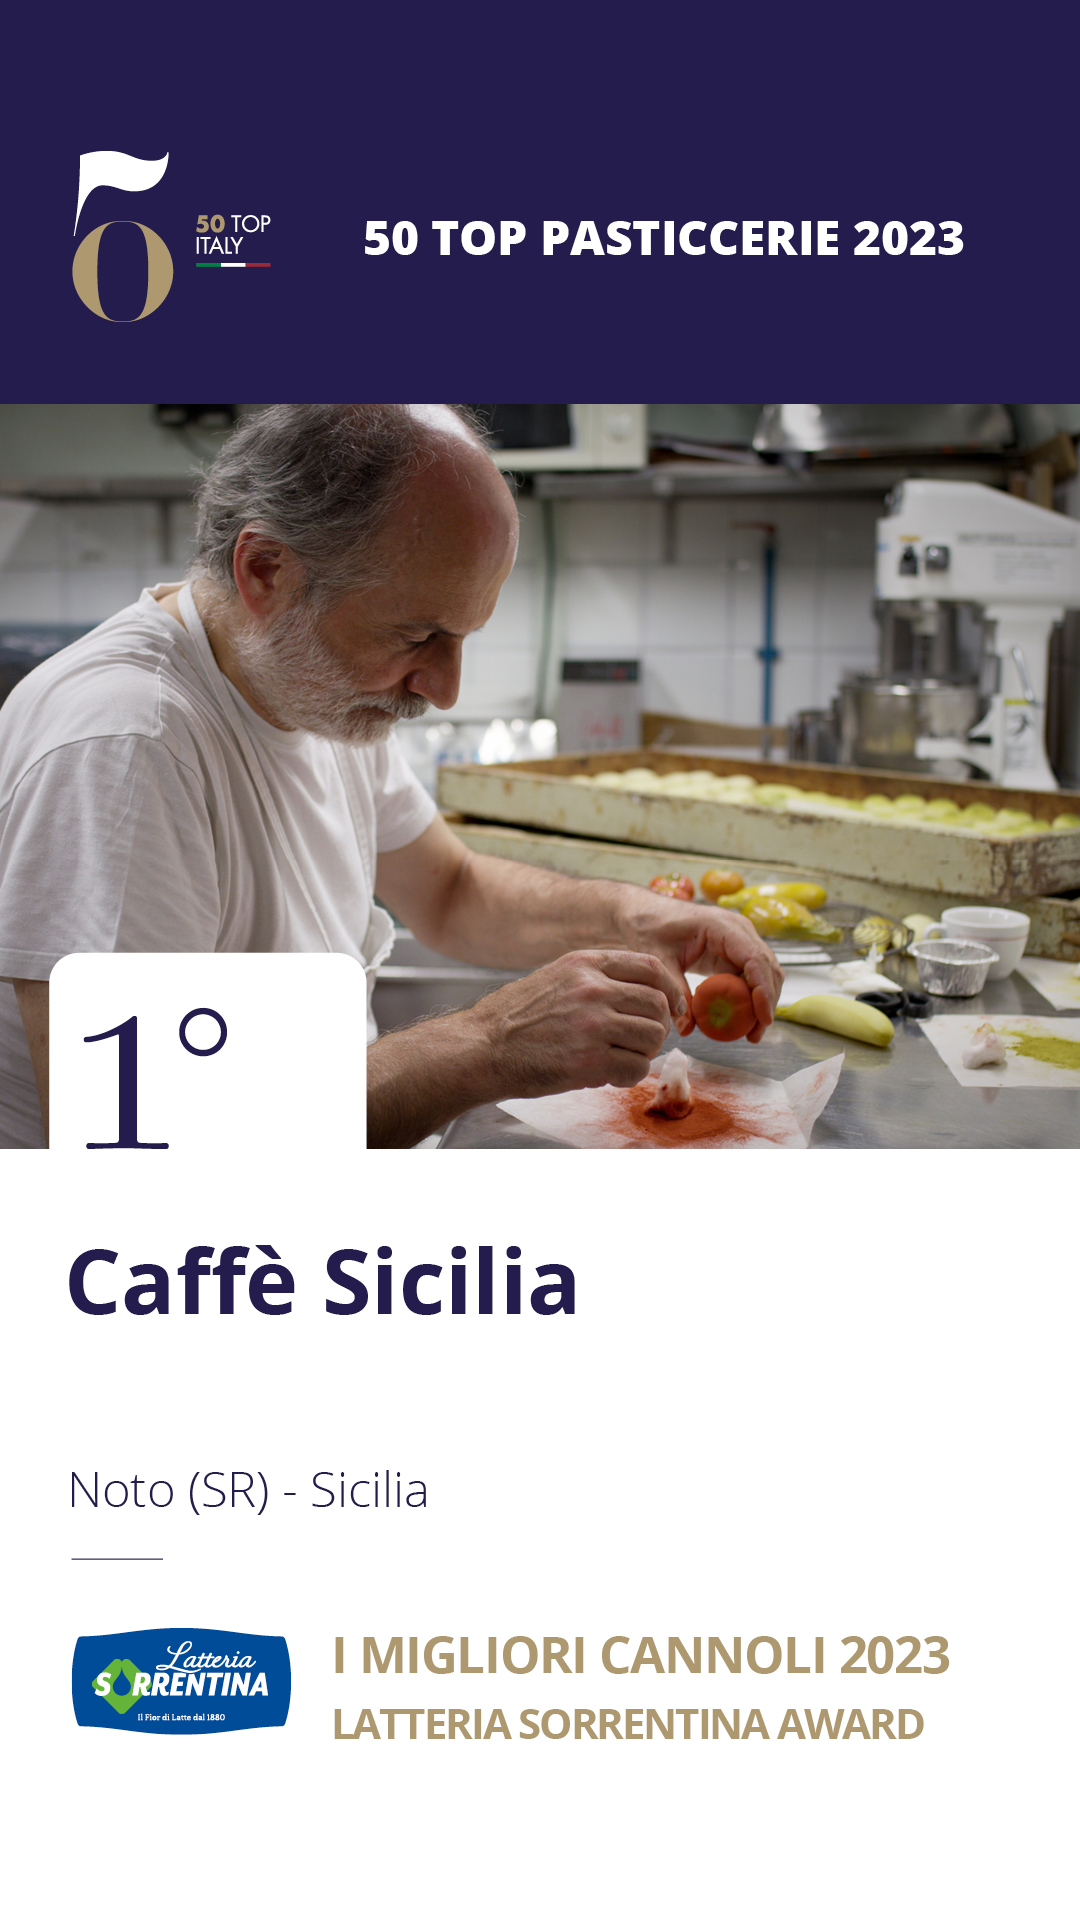 1 - Caffè Sicilia - Noto (SR), Sicilia